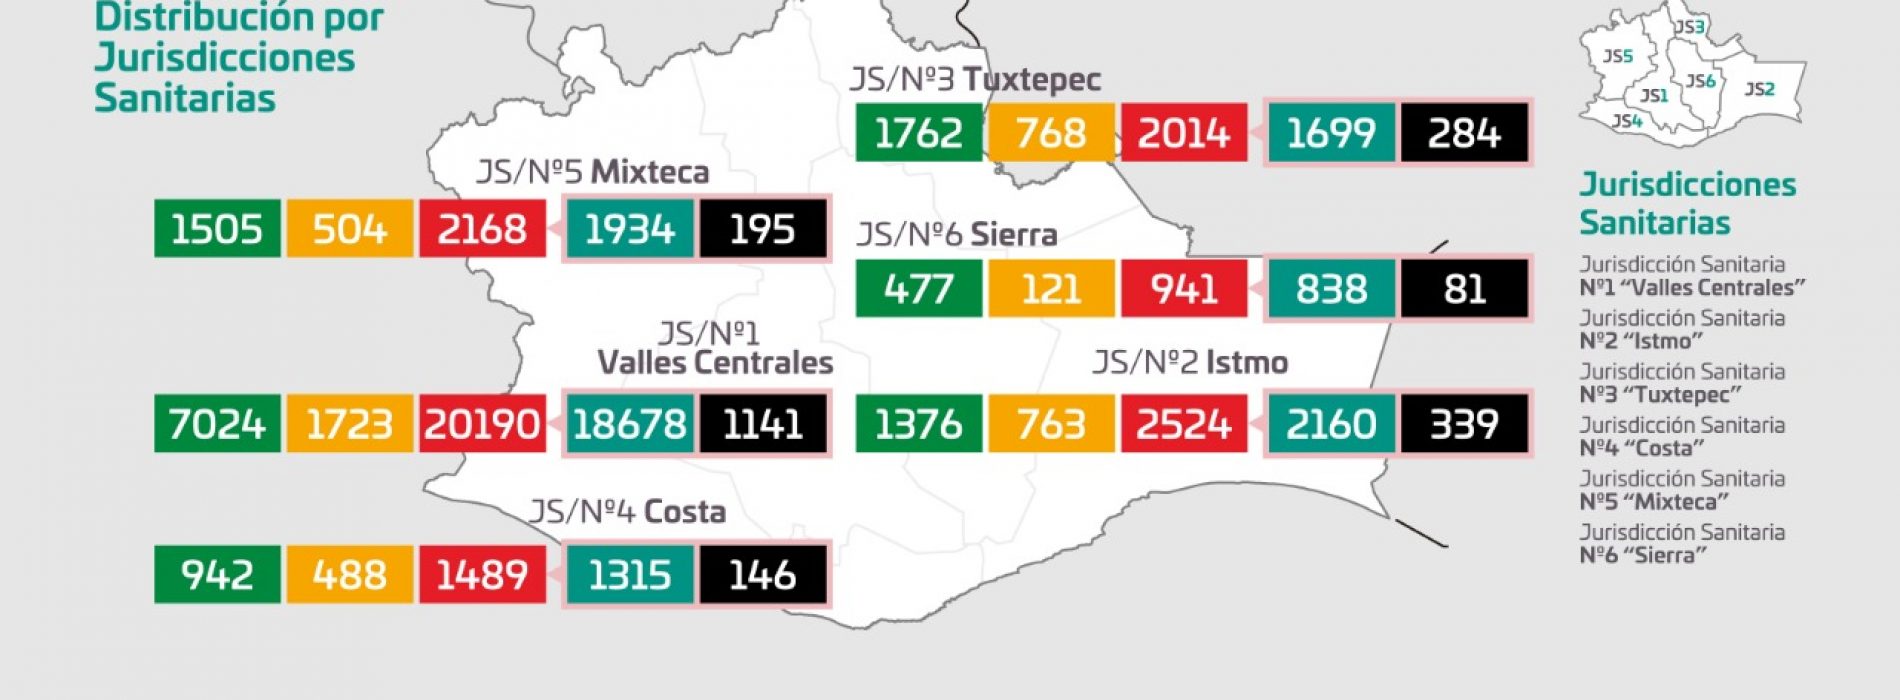 Con 252 casos más por COVID-19, Oaxaca llega a  los 29 mil 326 acumulados